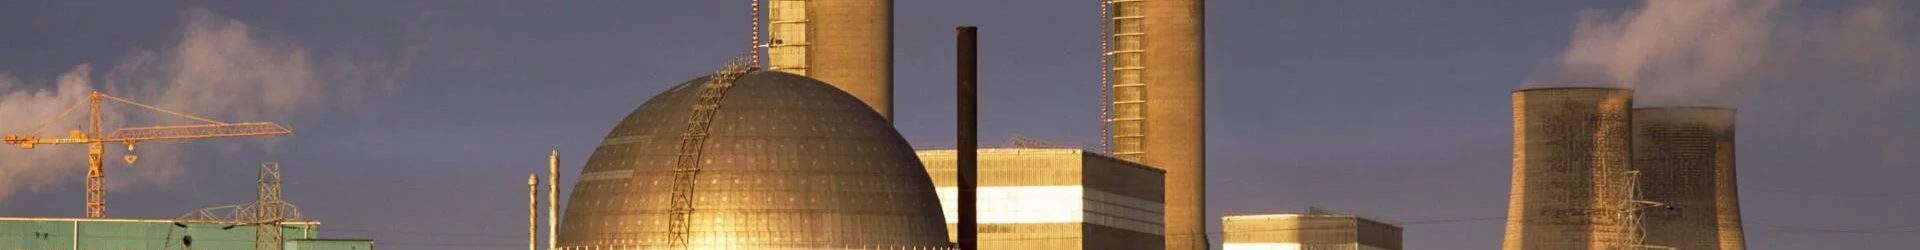 У Британии не хватает мощностей для ядерных отходов